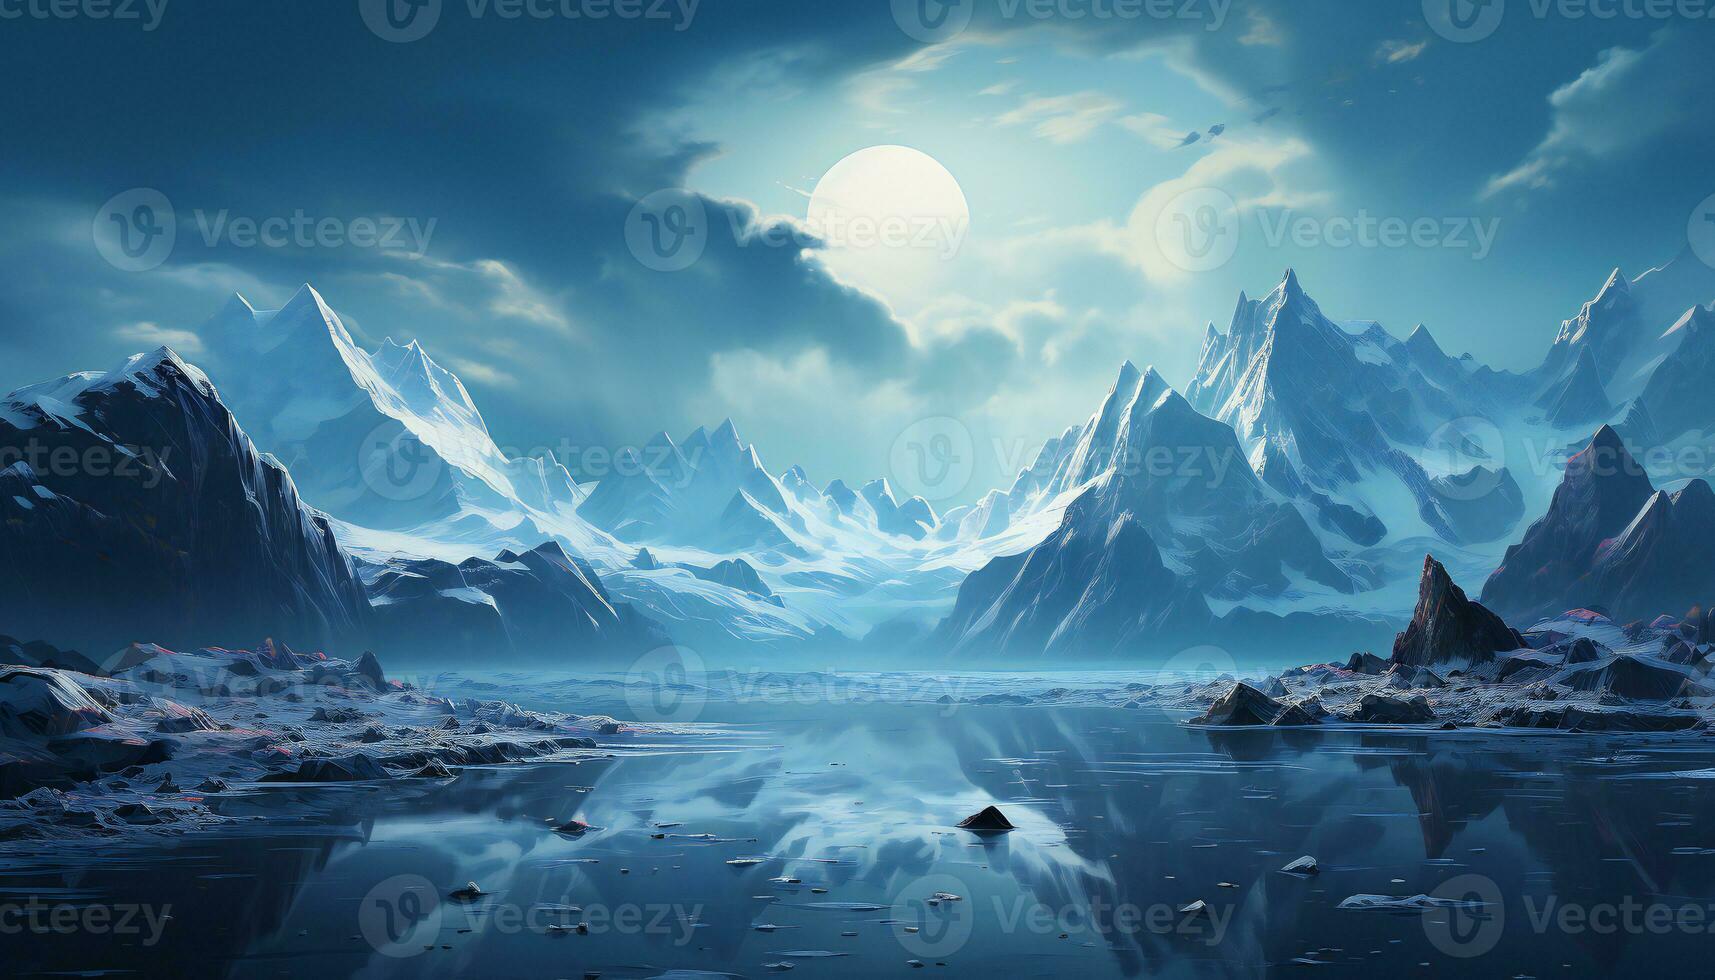 rekreation av en kall landskap av en glaciär med berg stenar, sjö, och en Sol mellan kall moln. illustration ai foto